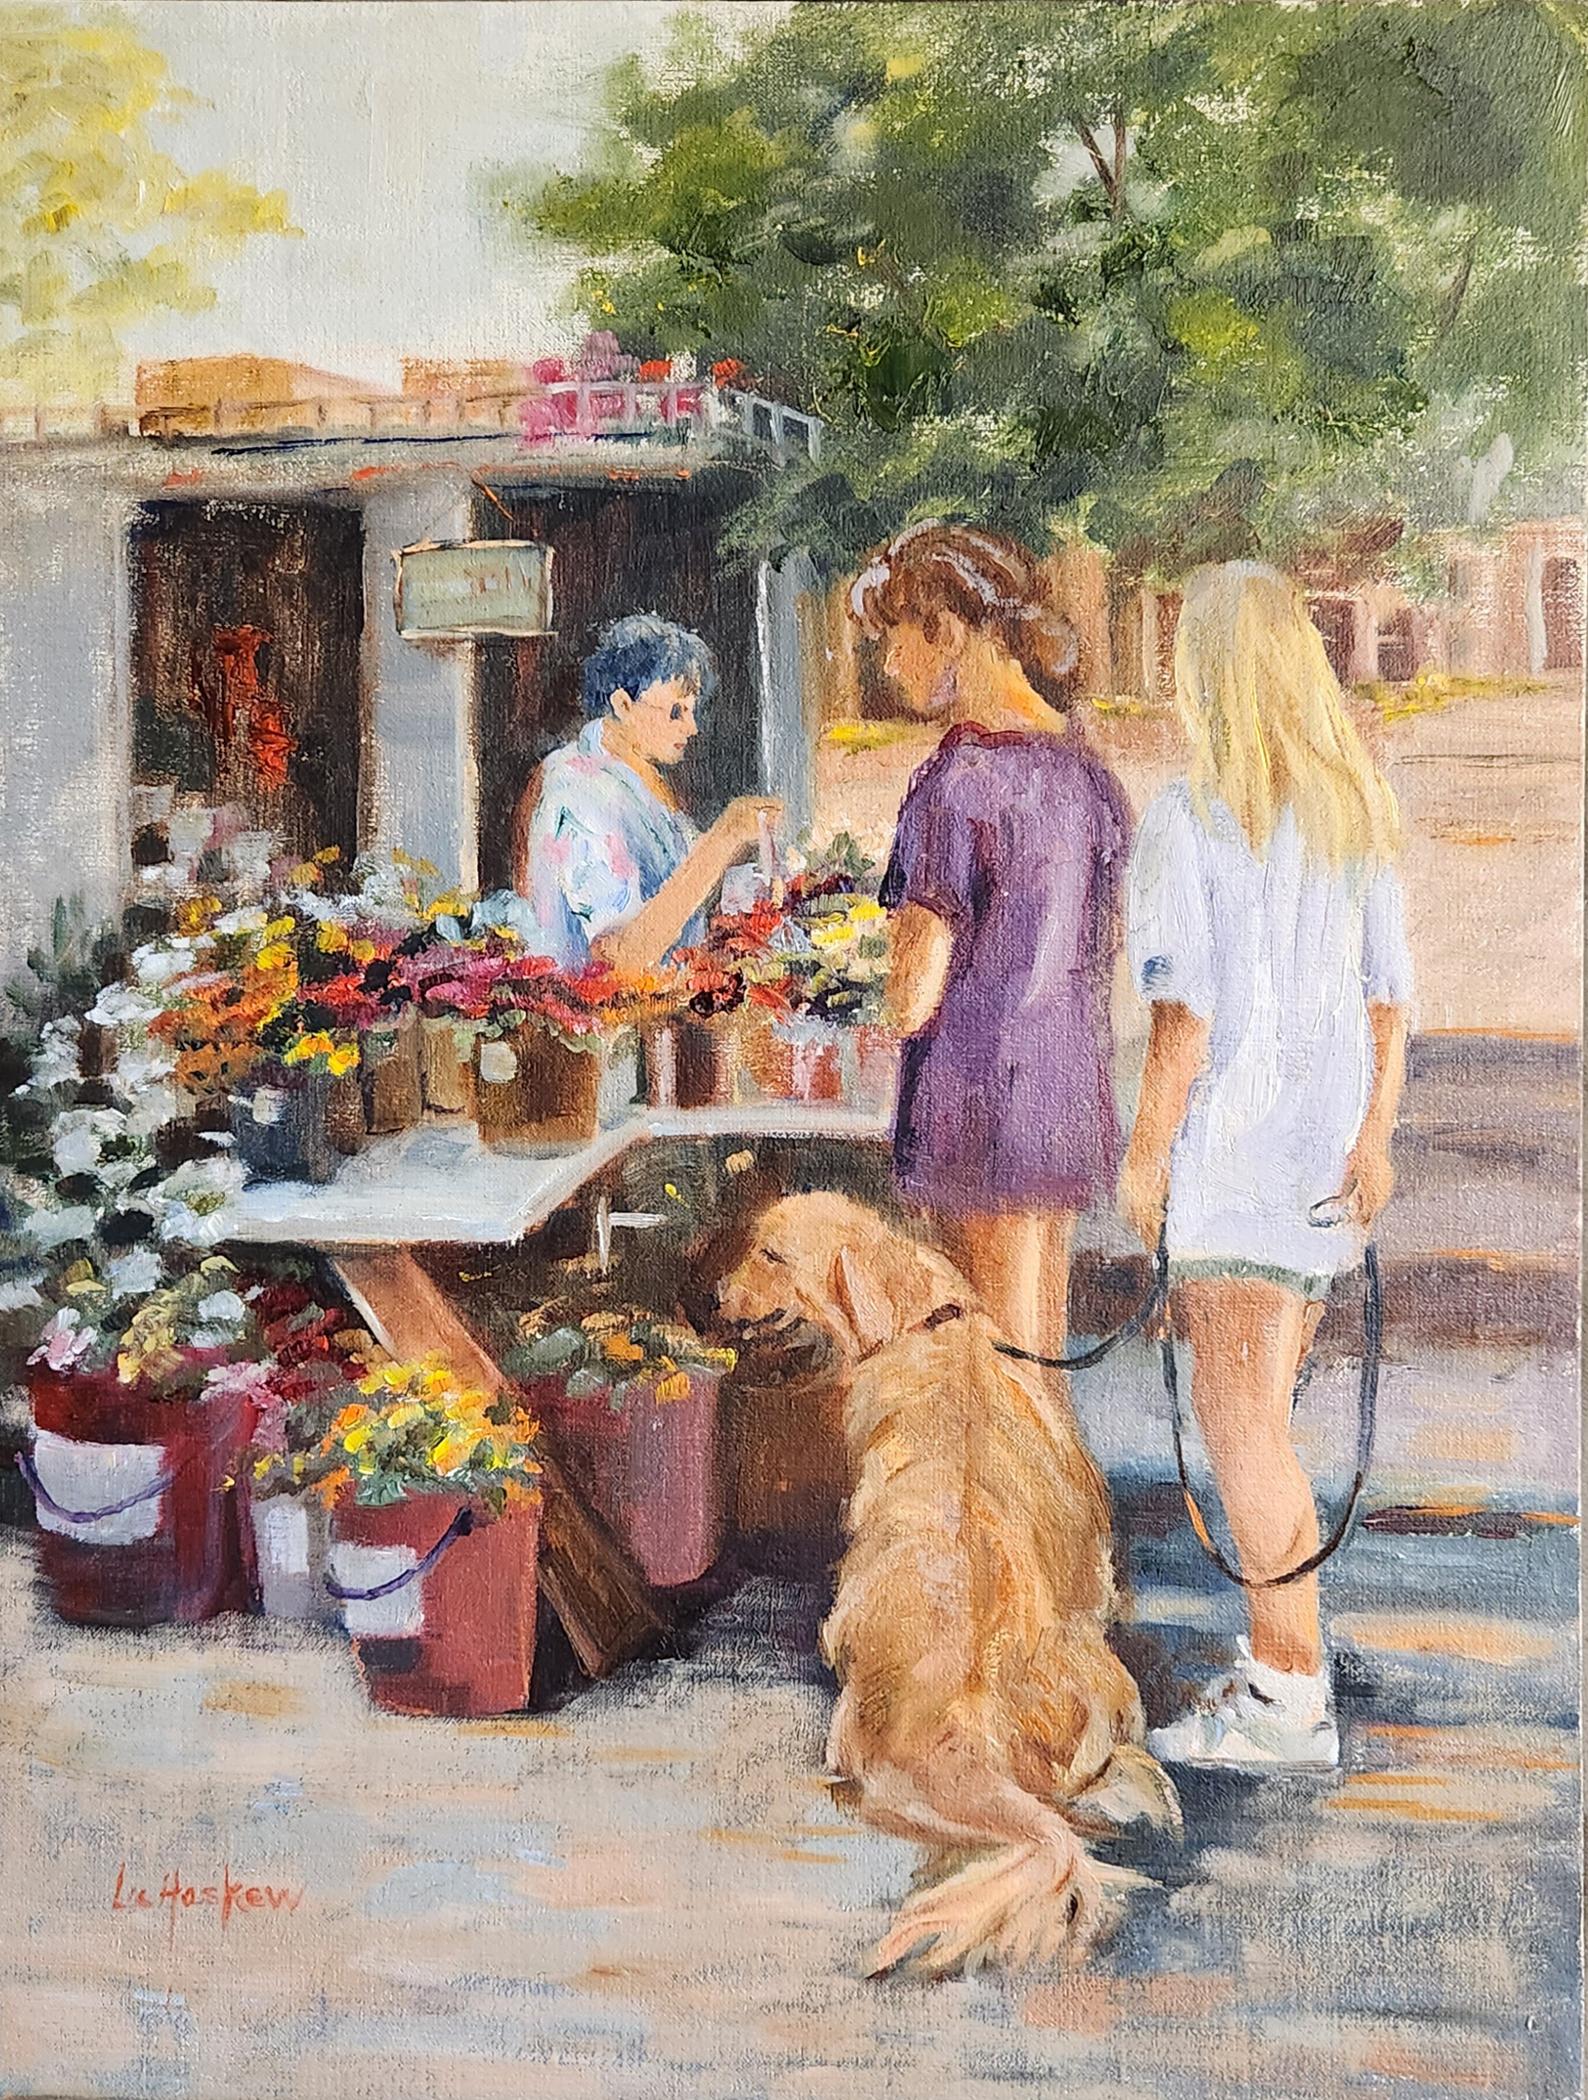 Lu Haskew Landscape Painting - Flower Market, 16x12" oil on board